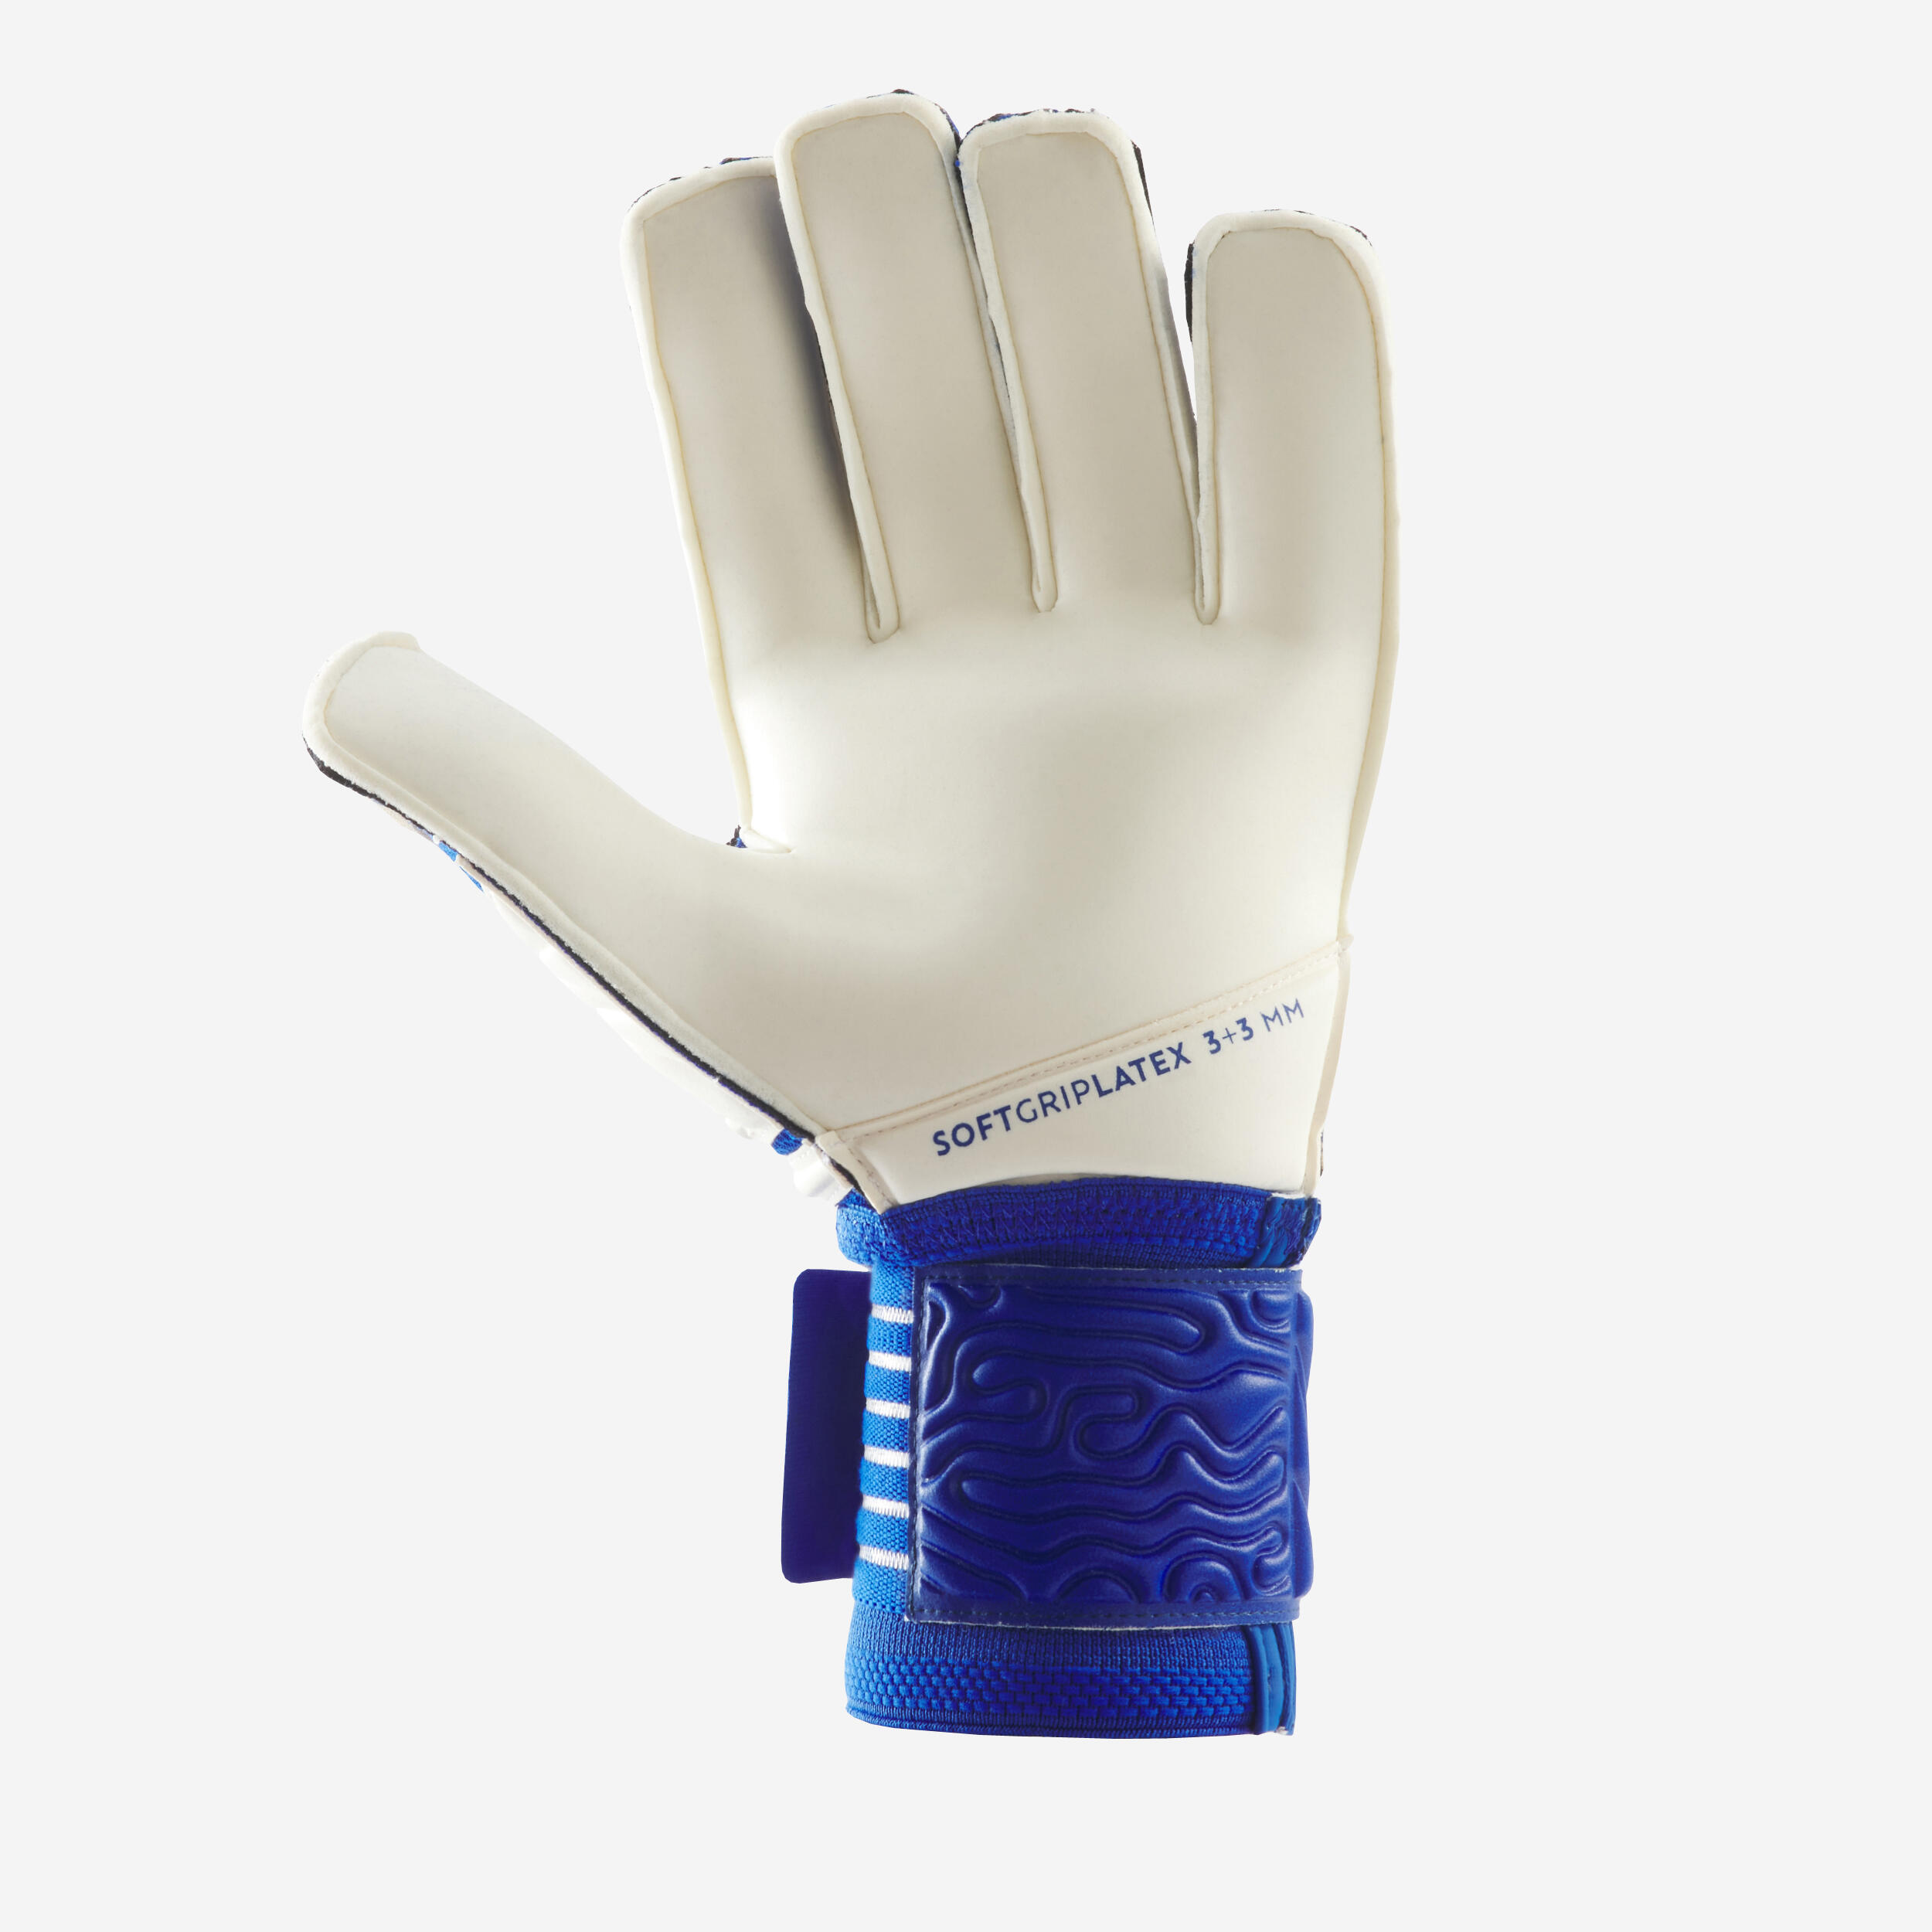 Soccer Goalkeeper Gloves - F 500 Viralto White/Blue - KIPSTA